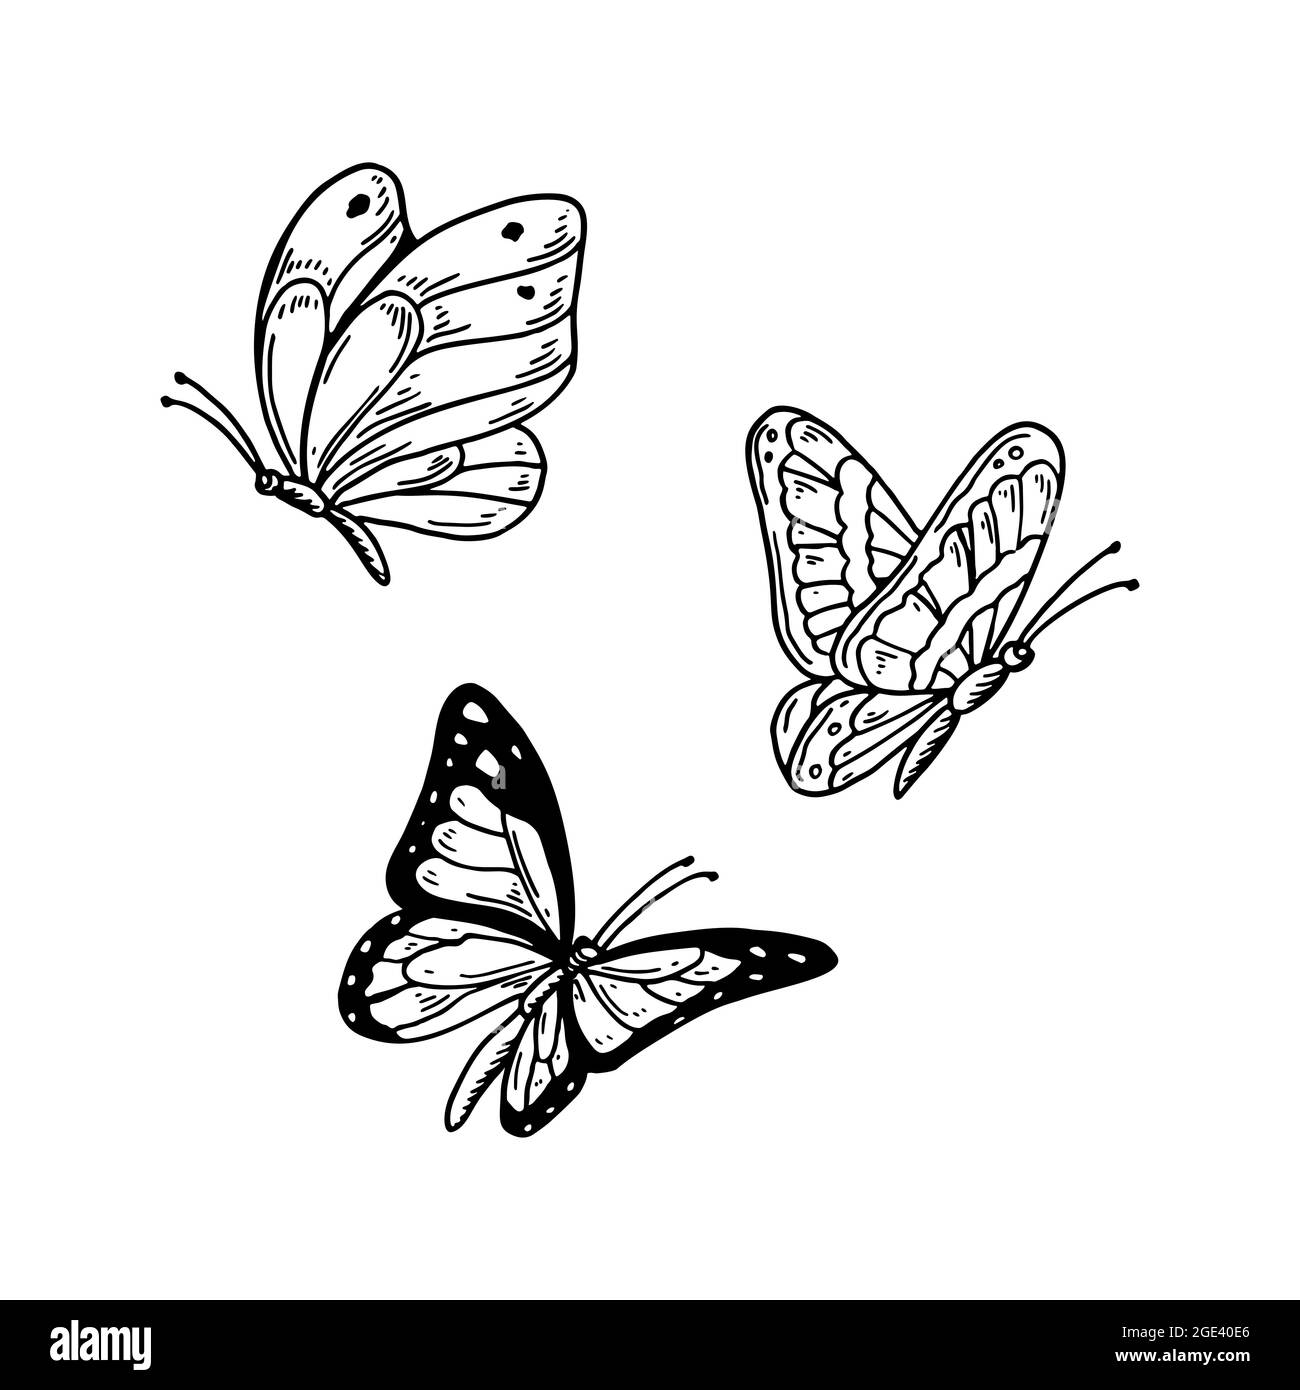 Ensemble de papillons dessinés à la main isolés de blanc. Illustration vectorielle dans le style d'esquisse Illustration de Vecteur